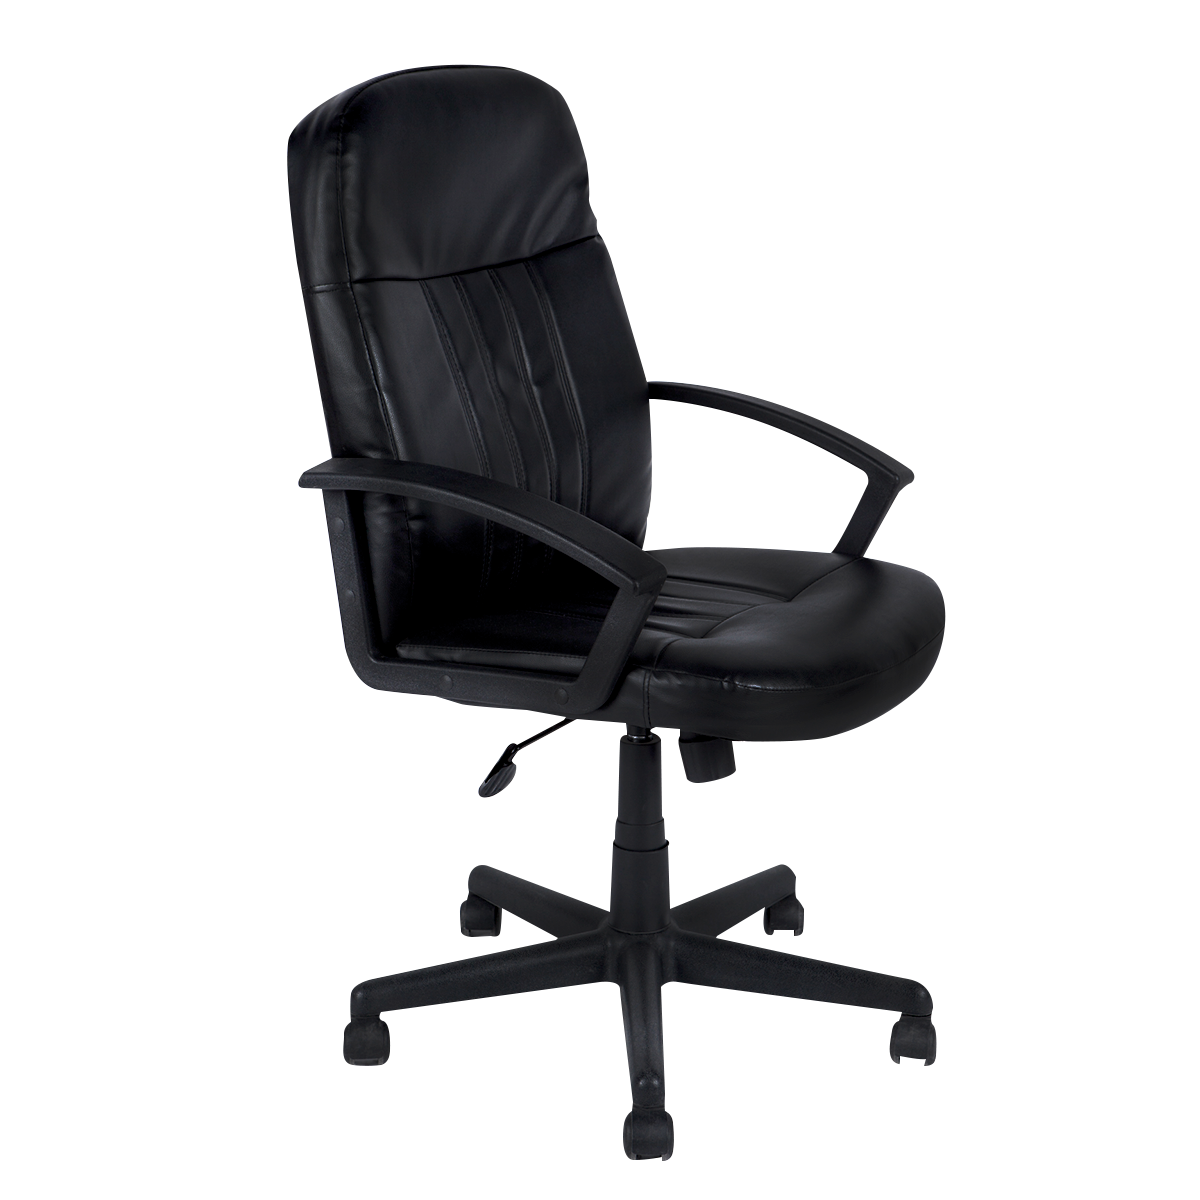 Tope silla oficina, oval, color negro. Pack 5 un.